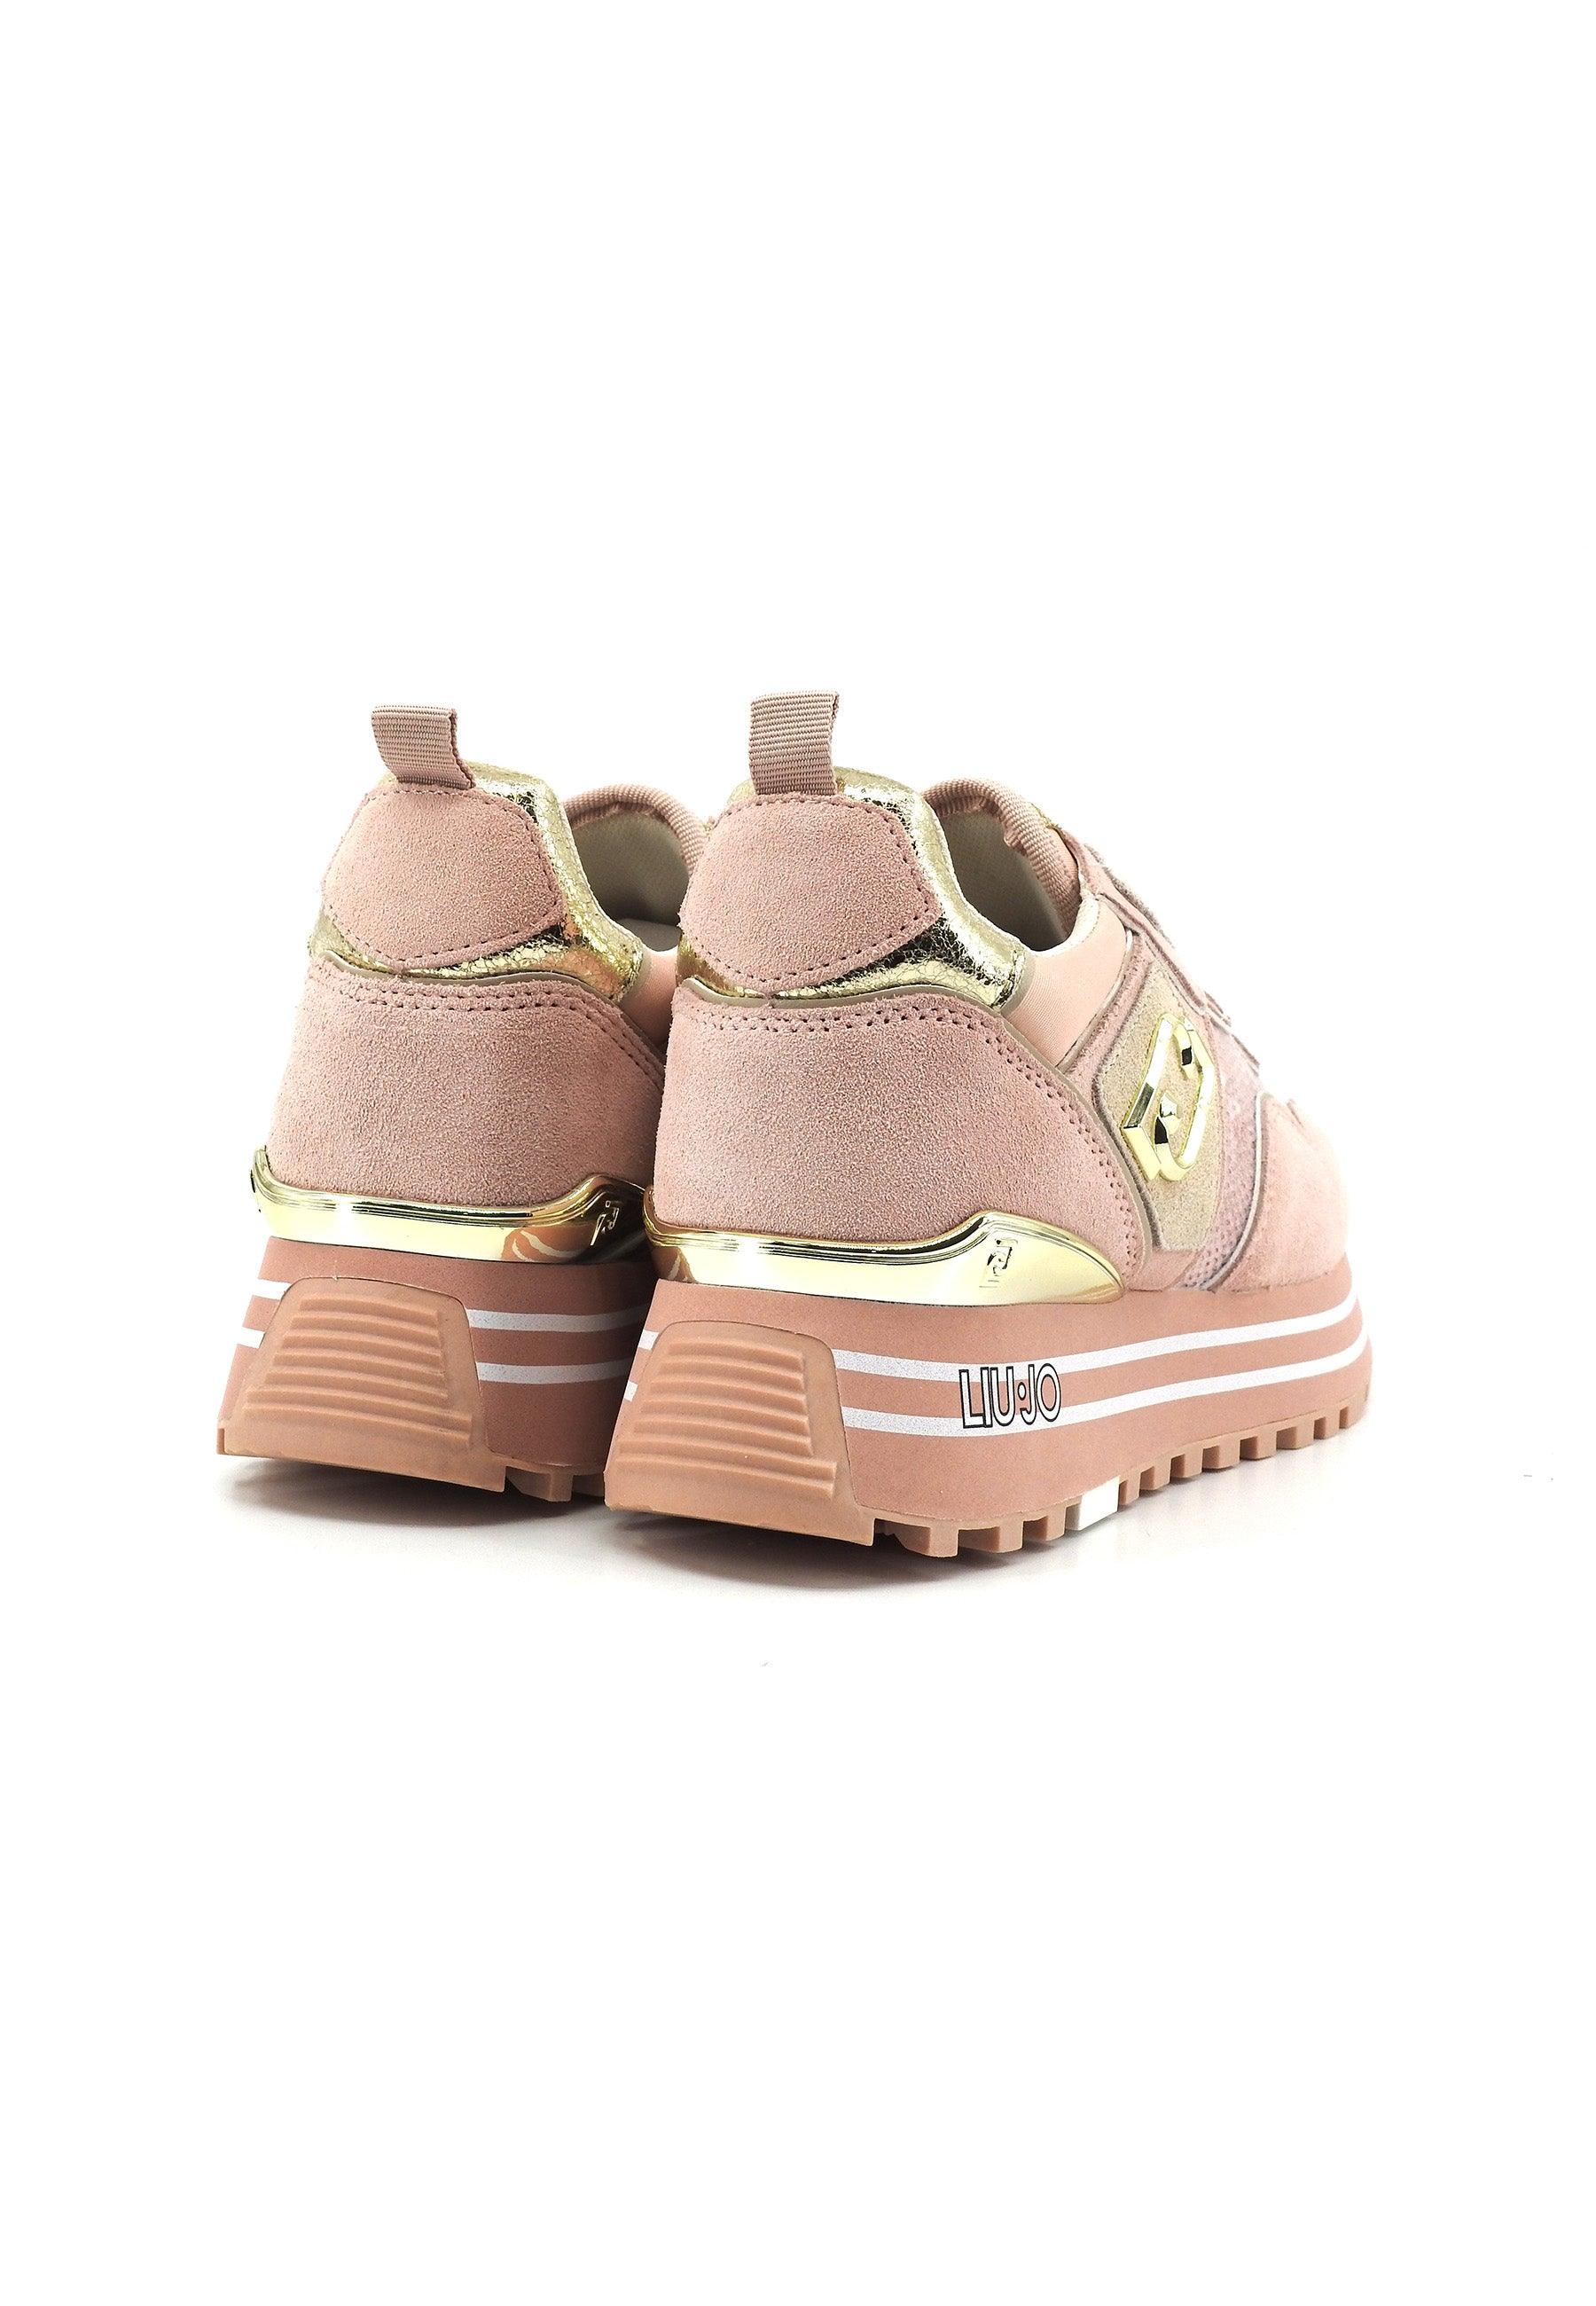 LIU JO Maxi Wonder 24 Sneaker Donna Blossom Rosa BA4049PX064 - Sandrini Calzature e Abbigliamento